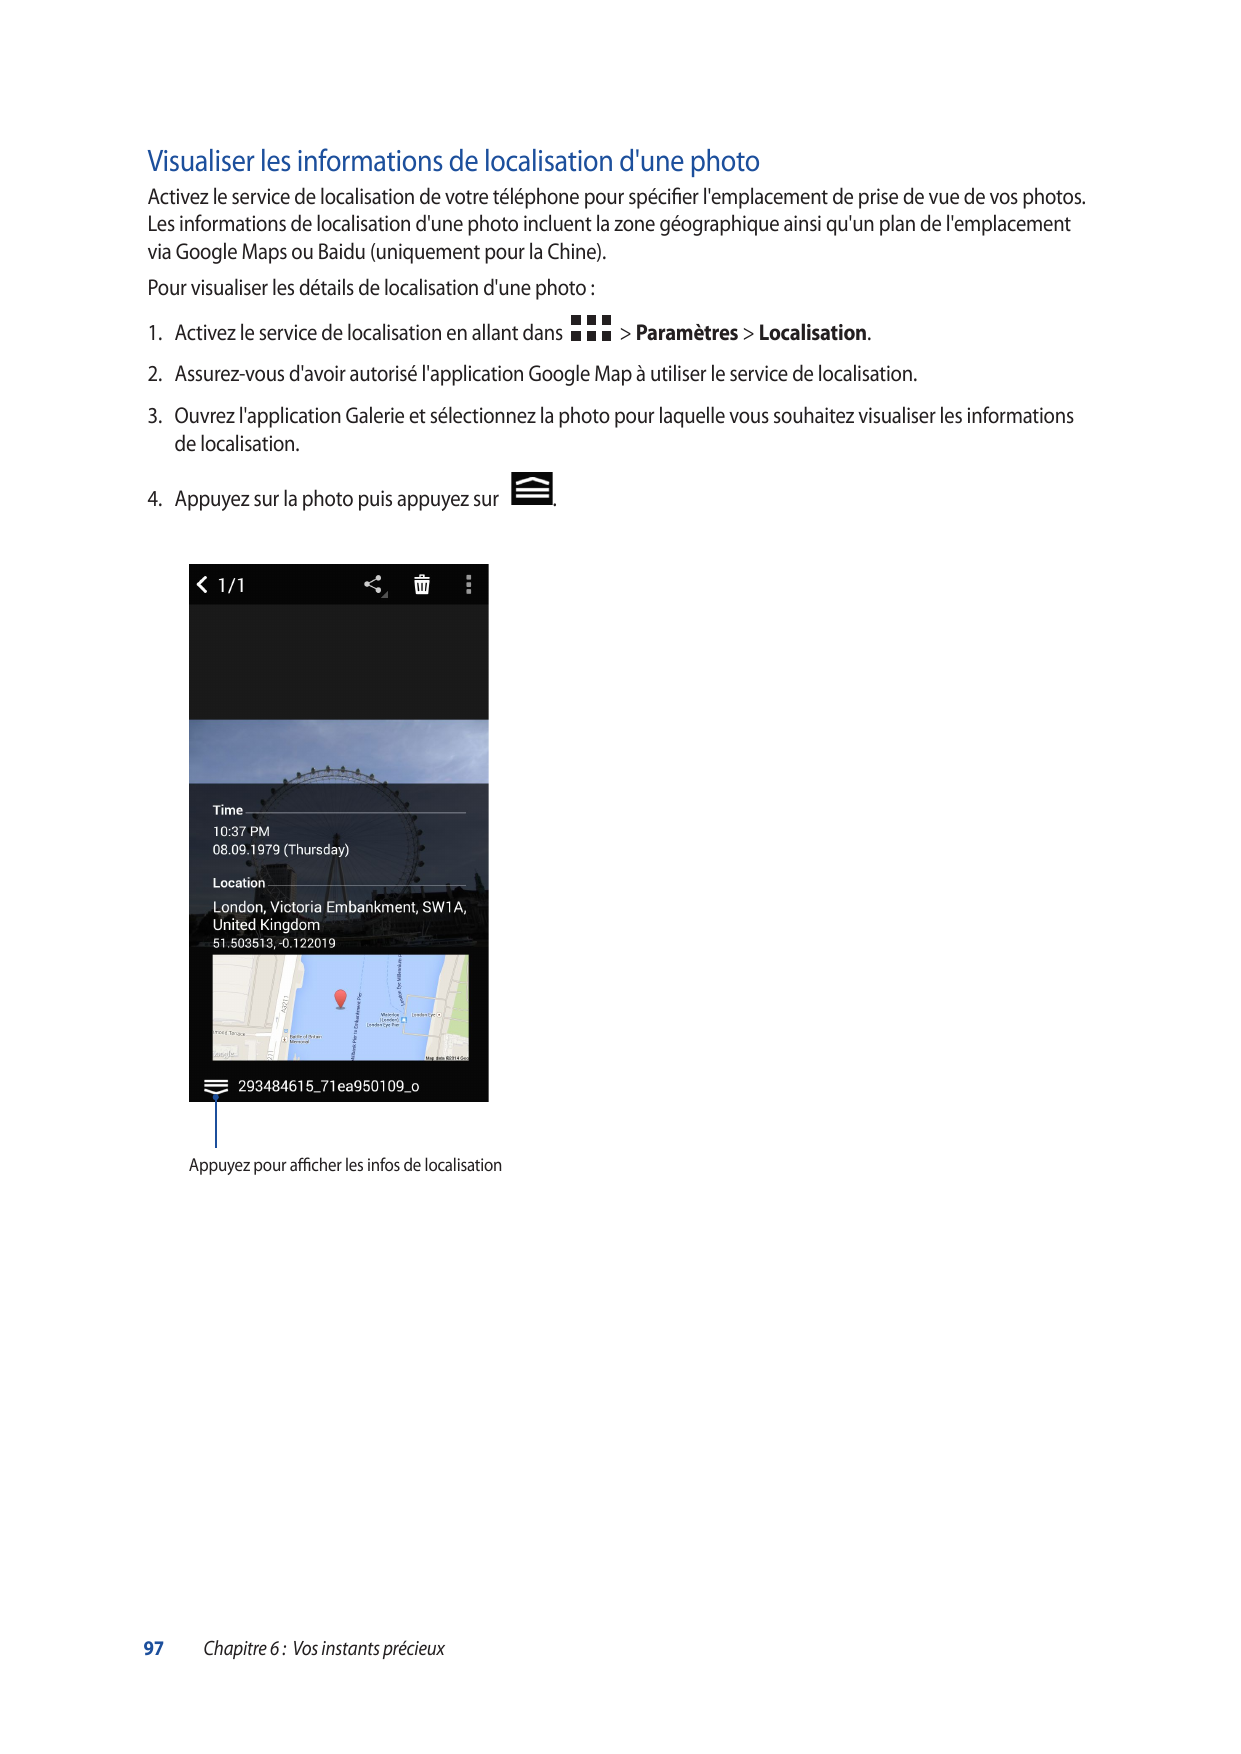 Visualiser les informations de localisation d'une photoActivez le service de localisation de votre téléphone pour spécifier l'em